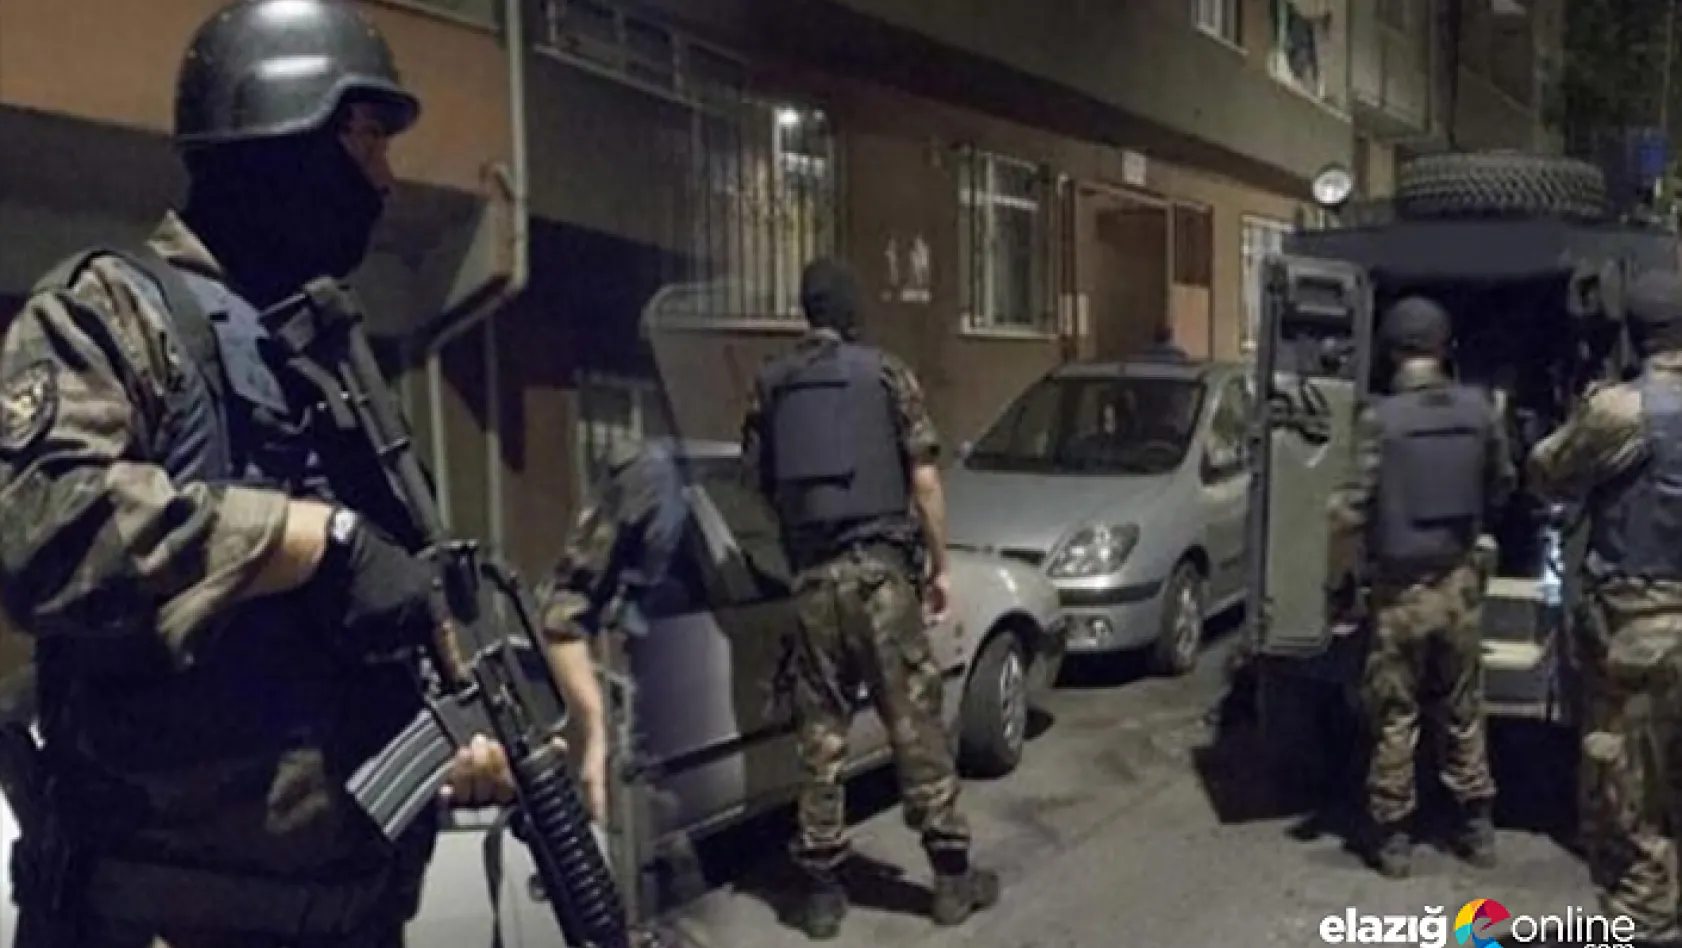 Elazığ'da uyuşturucu tacirlerine operasyon: 15 gözaltı